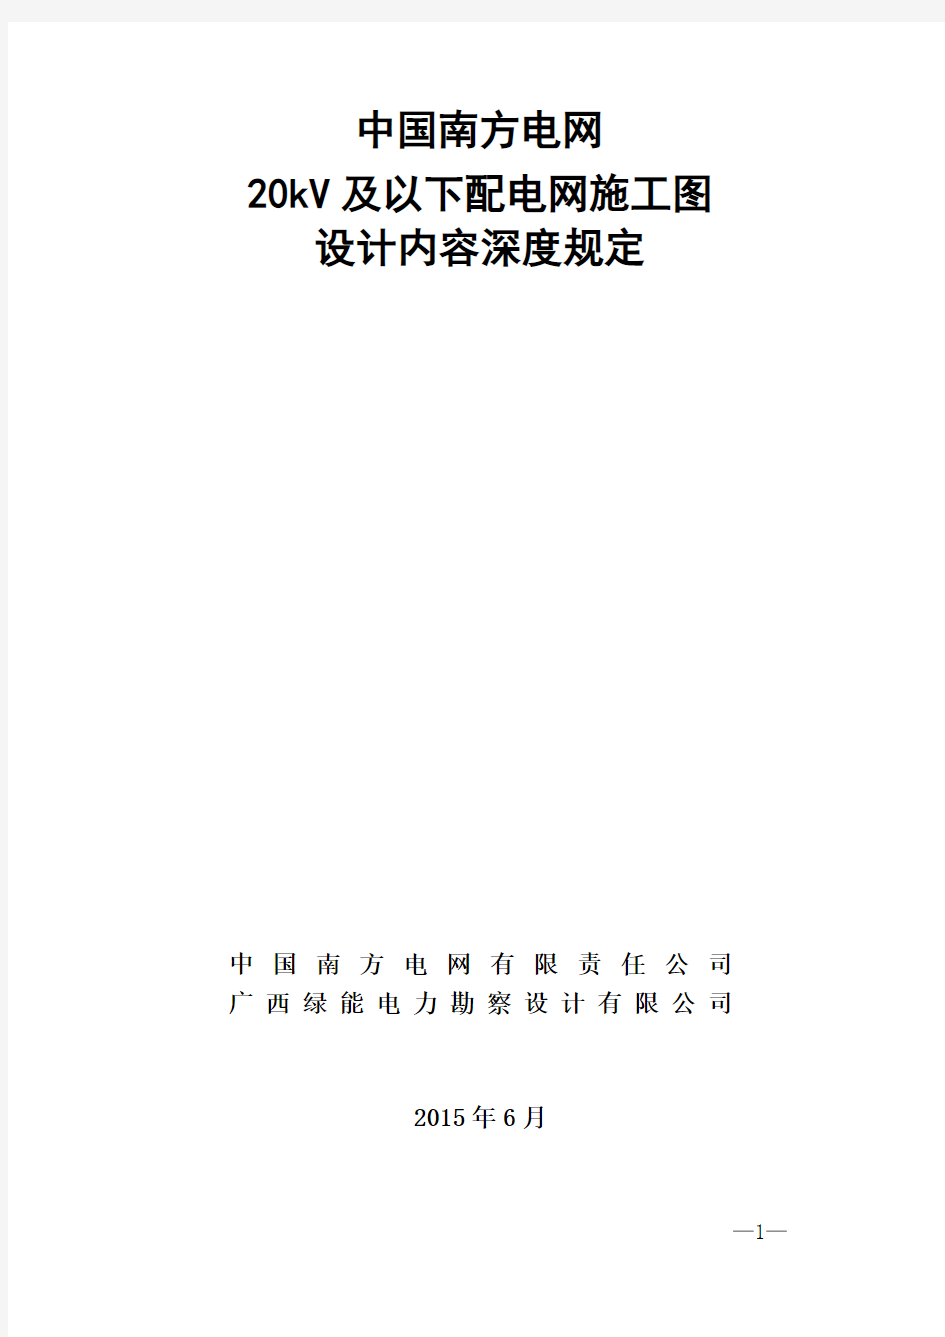 中国南方电网20kV及以下配电网项目施工图设计内容深度规定